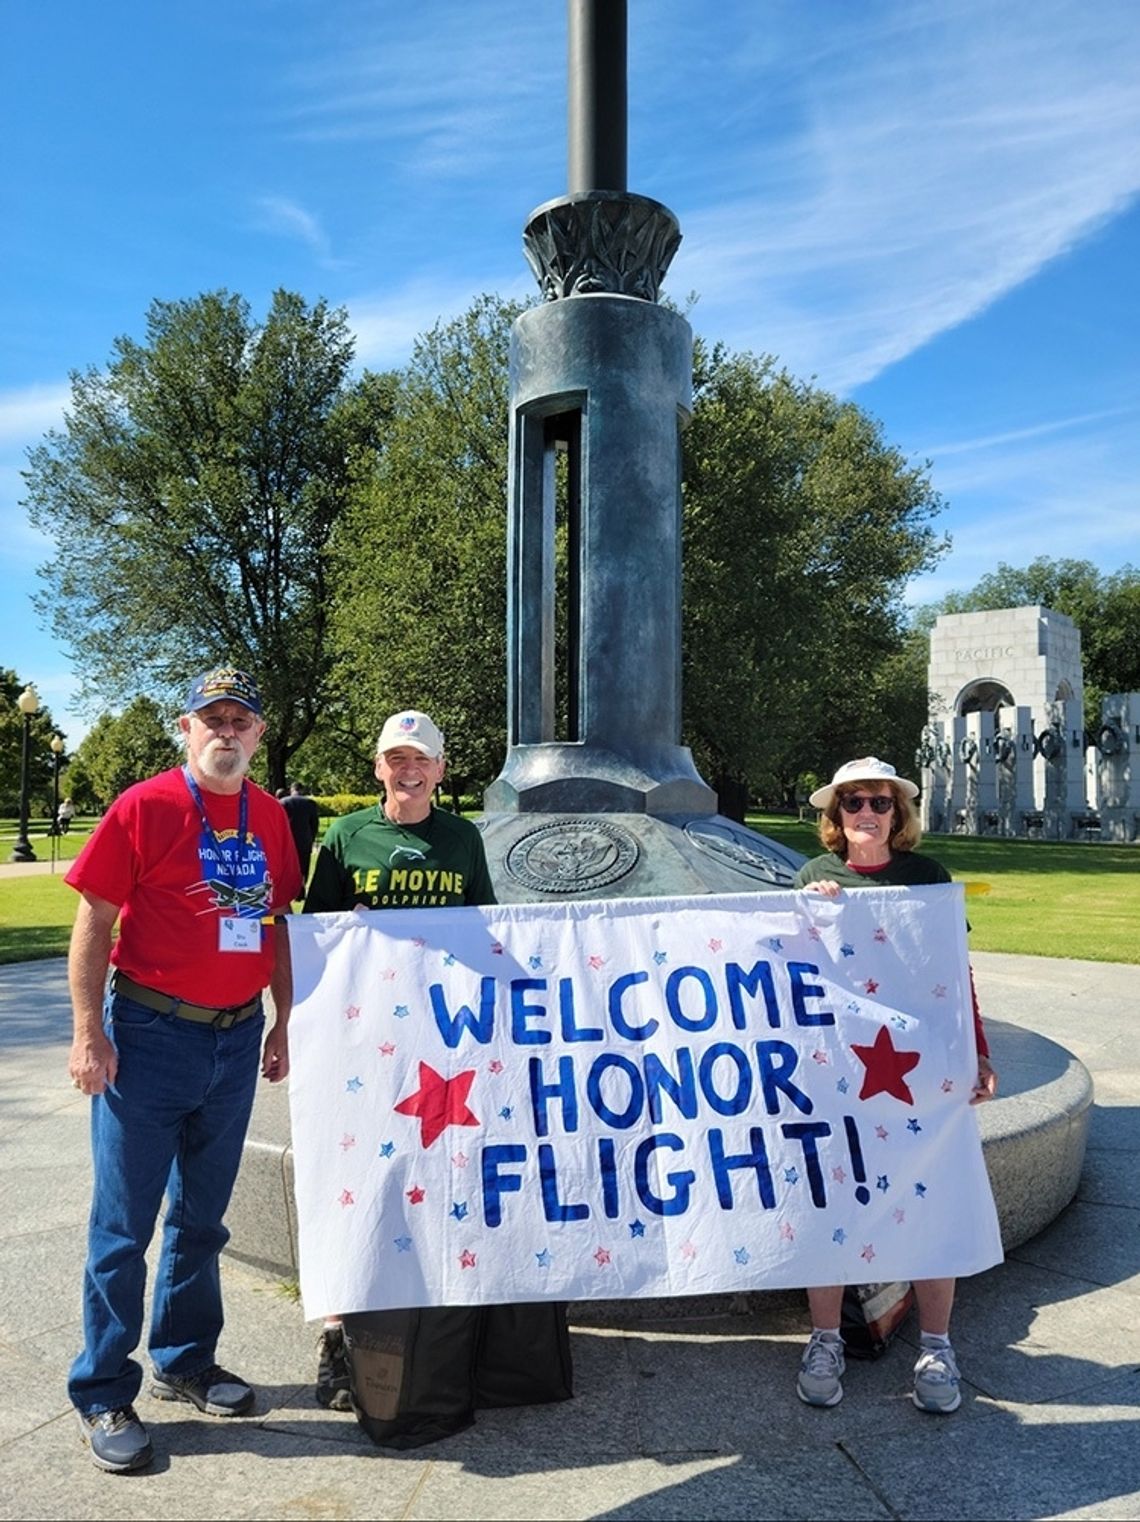 Stuart Cook, Local Veteran Takes the Honor Flight to Washington D.C.